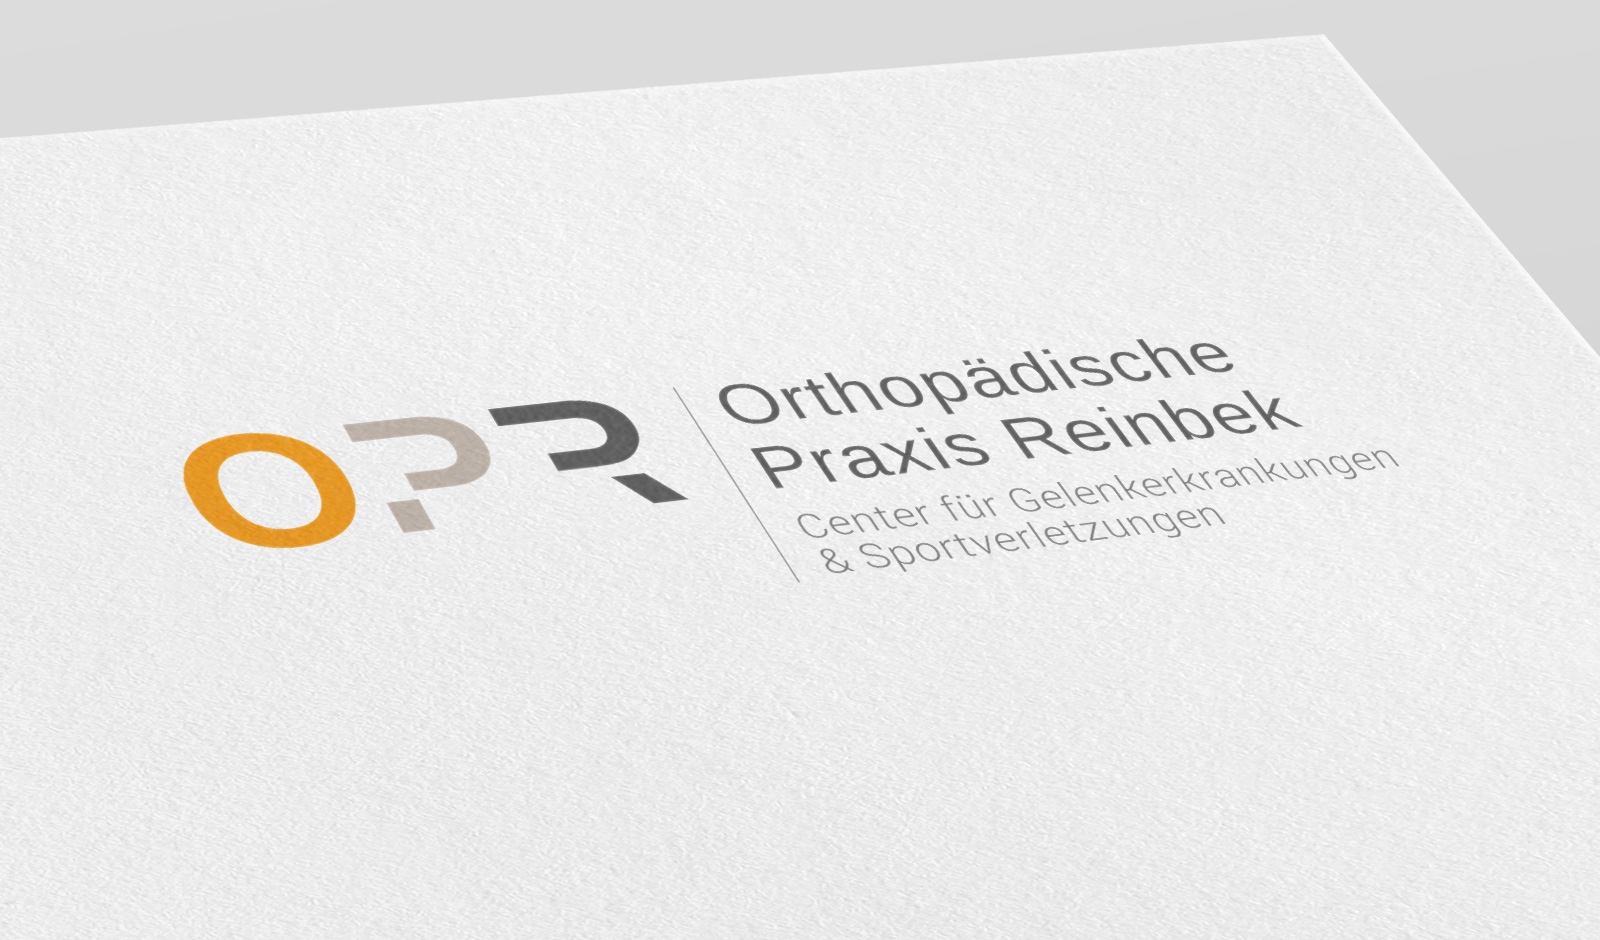 Orthopädische Praxis Reinbeck OPR Thorsten Siemssen, Logodesign